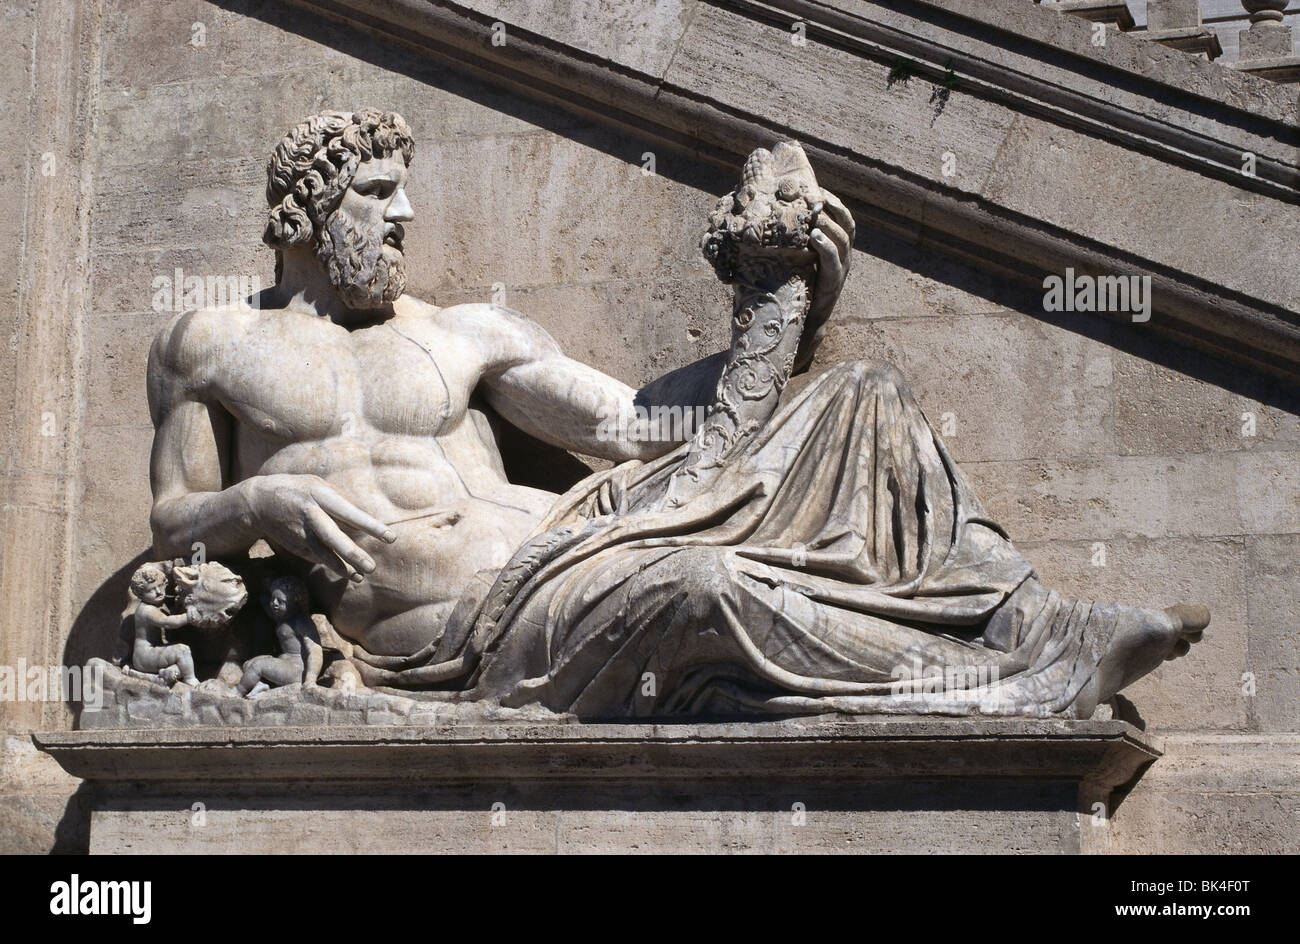 La sculpture romaine antique de la personnification du Tibre dans la Piazza del Campidoglio, Rome Italie Banque D'Images